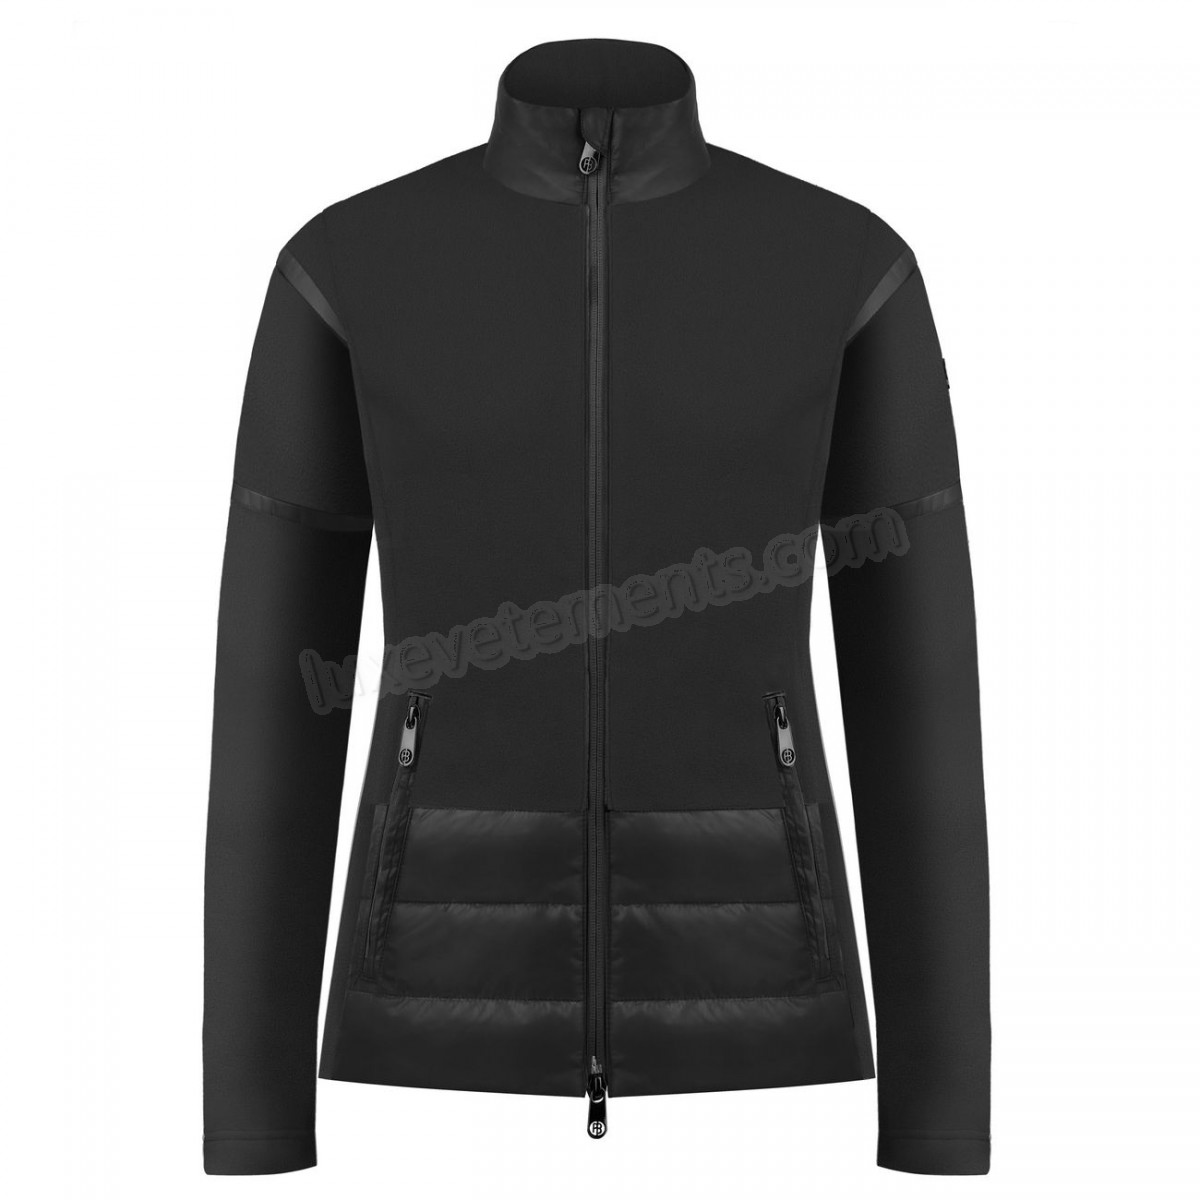 Poivre Blanc-Sports d'hiver femme POIVRE BLANC Veste Polaire Poivre Blanc Hybrid Fleece Jacket 1601 Black Femme Vente en ligne - -4